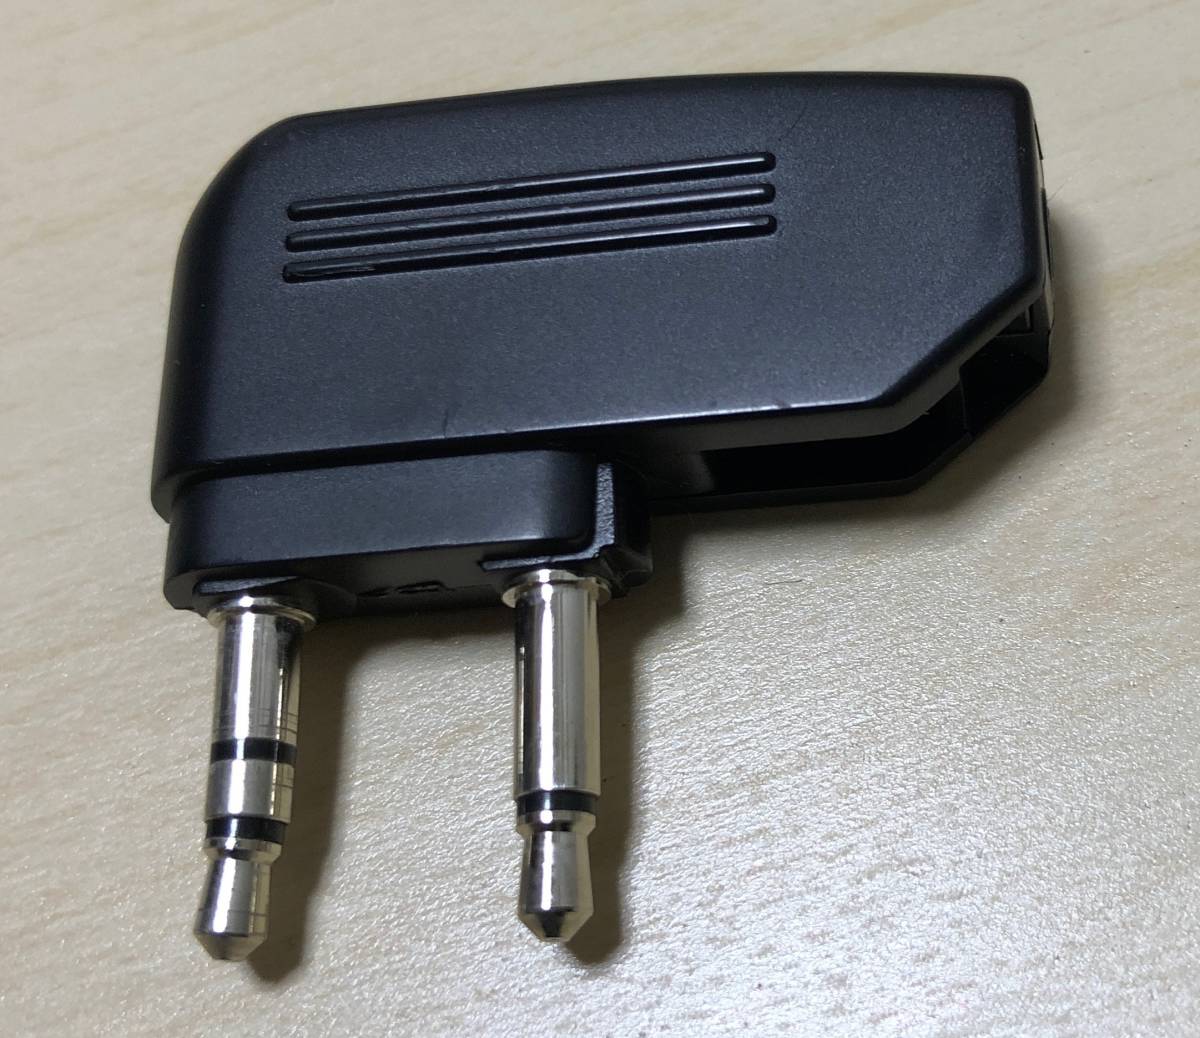 索尼降噪耳機MDR-ZX770BN垃圾 原文:SONYノイズキャンセリング ヘッドホン MDR-ZX770BN ジャンク